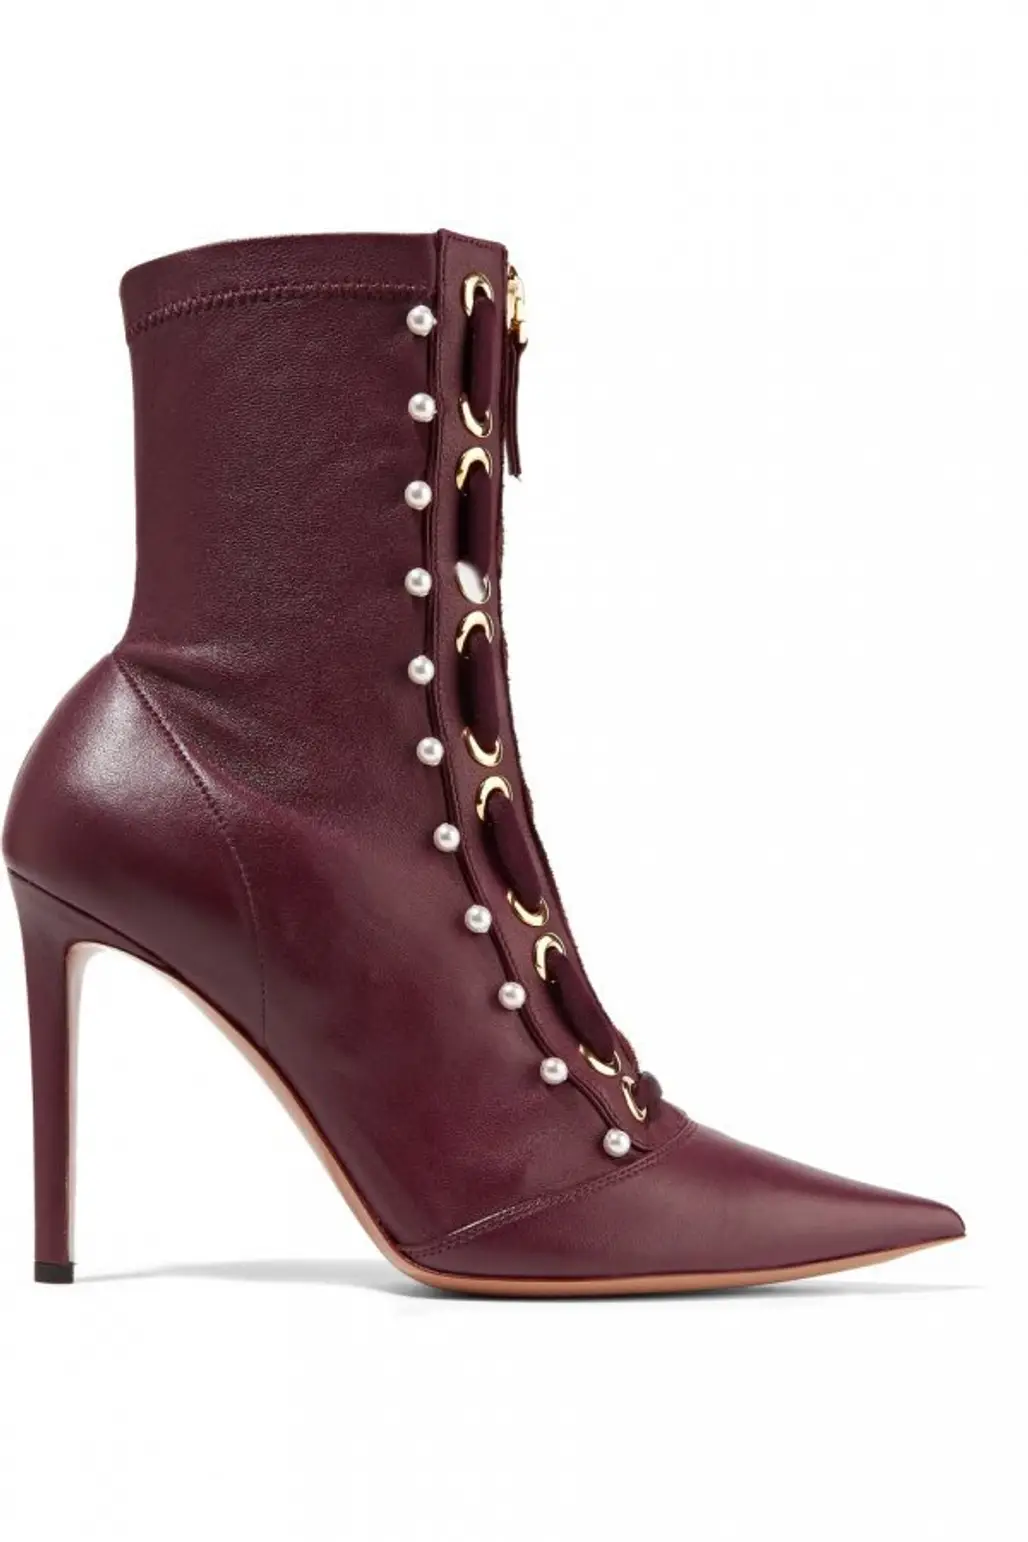 footwear, boot, brown, purple, high heeled footwear,